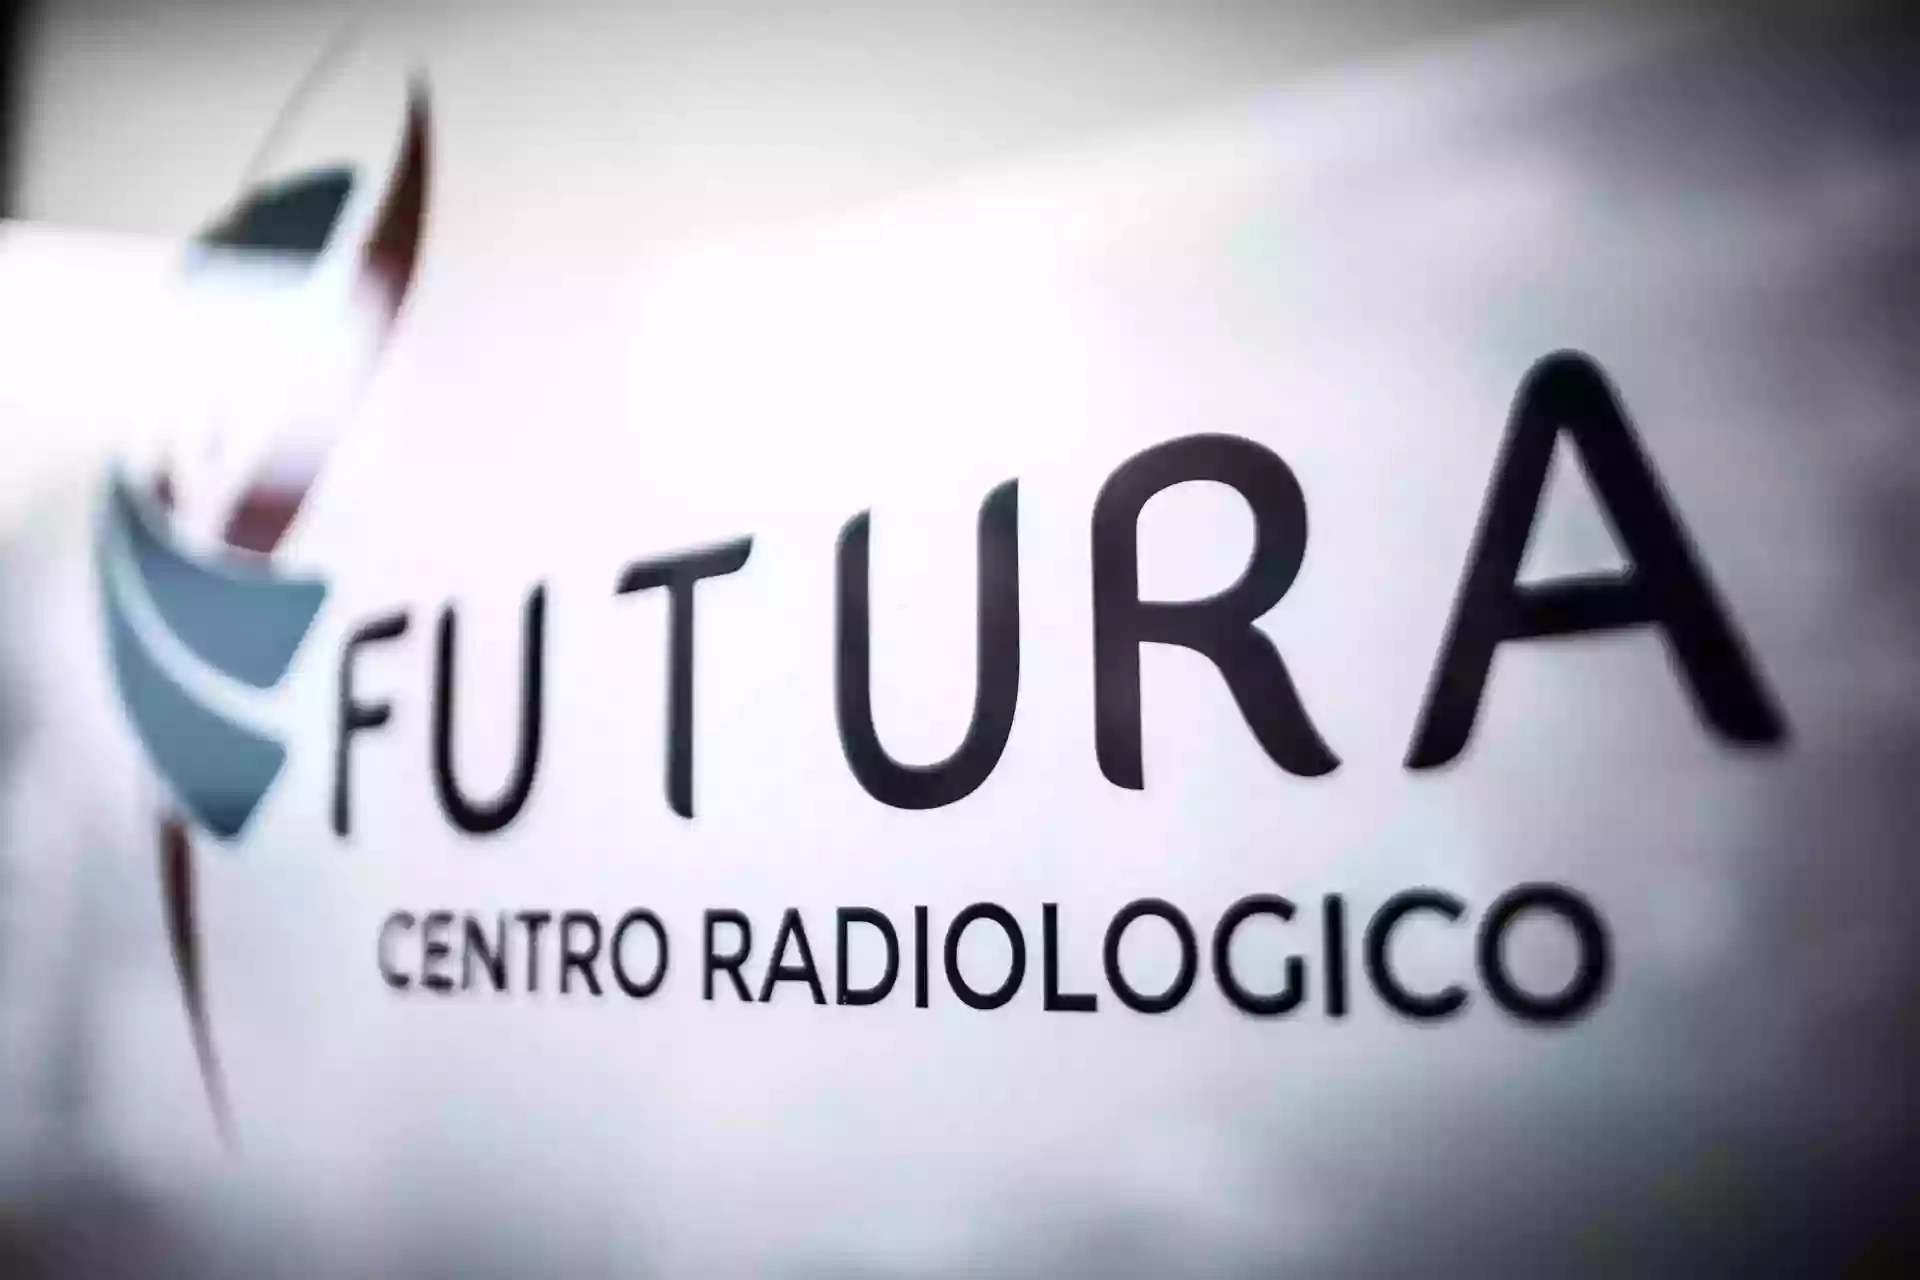 Centro Radiologico Futura